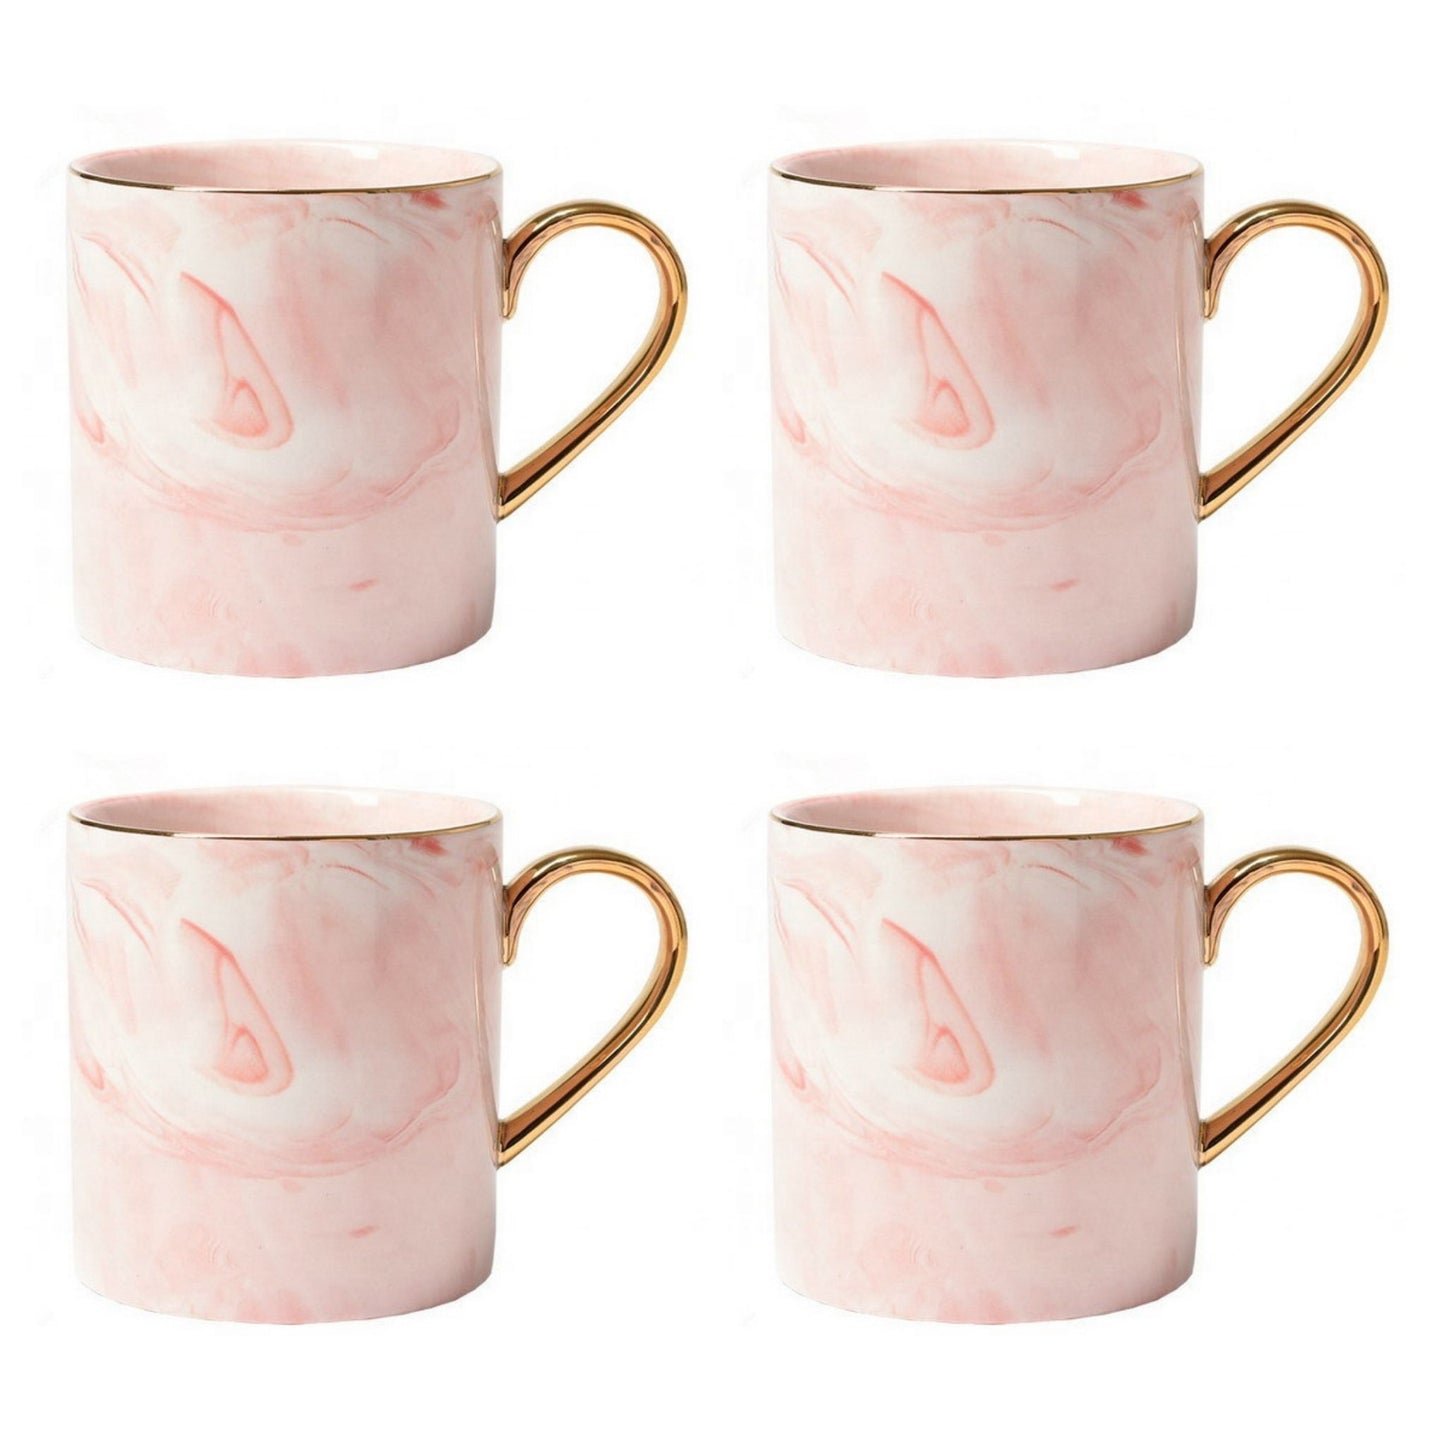 Rosa Marmor Tasse Goldener Henkel Schöne Tassen zum Verschenken Luxus Tassen Set Schönes Marmor Geschirr Luxus Geschirr mit Gold 4er Set